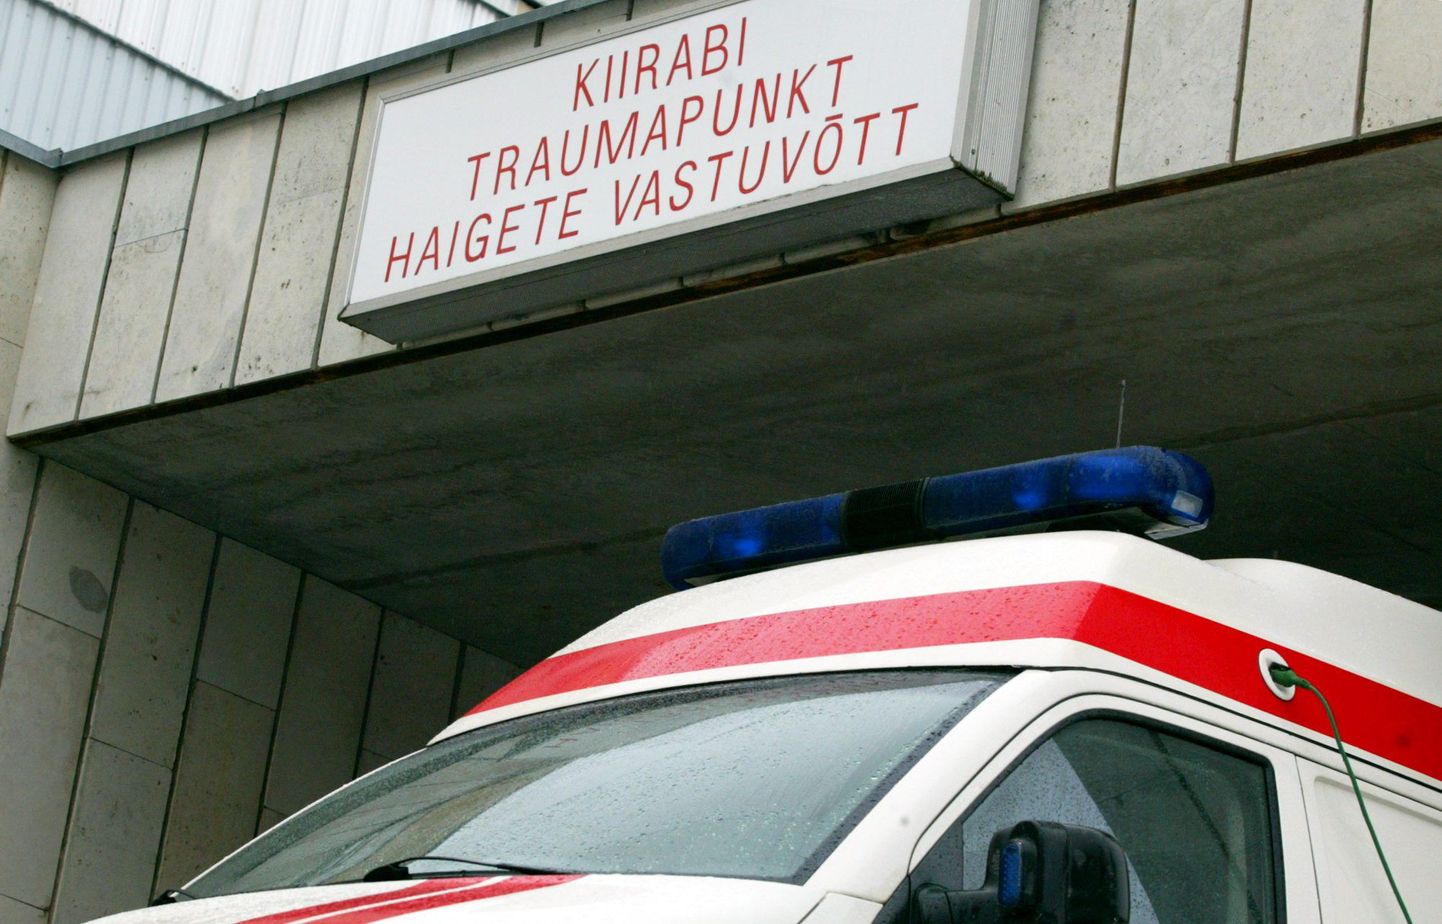 Kiirabi viis liiklusõnnetuses vigastada saanu haiglasse.